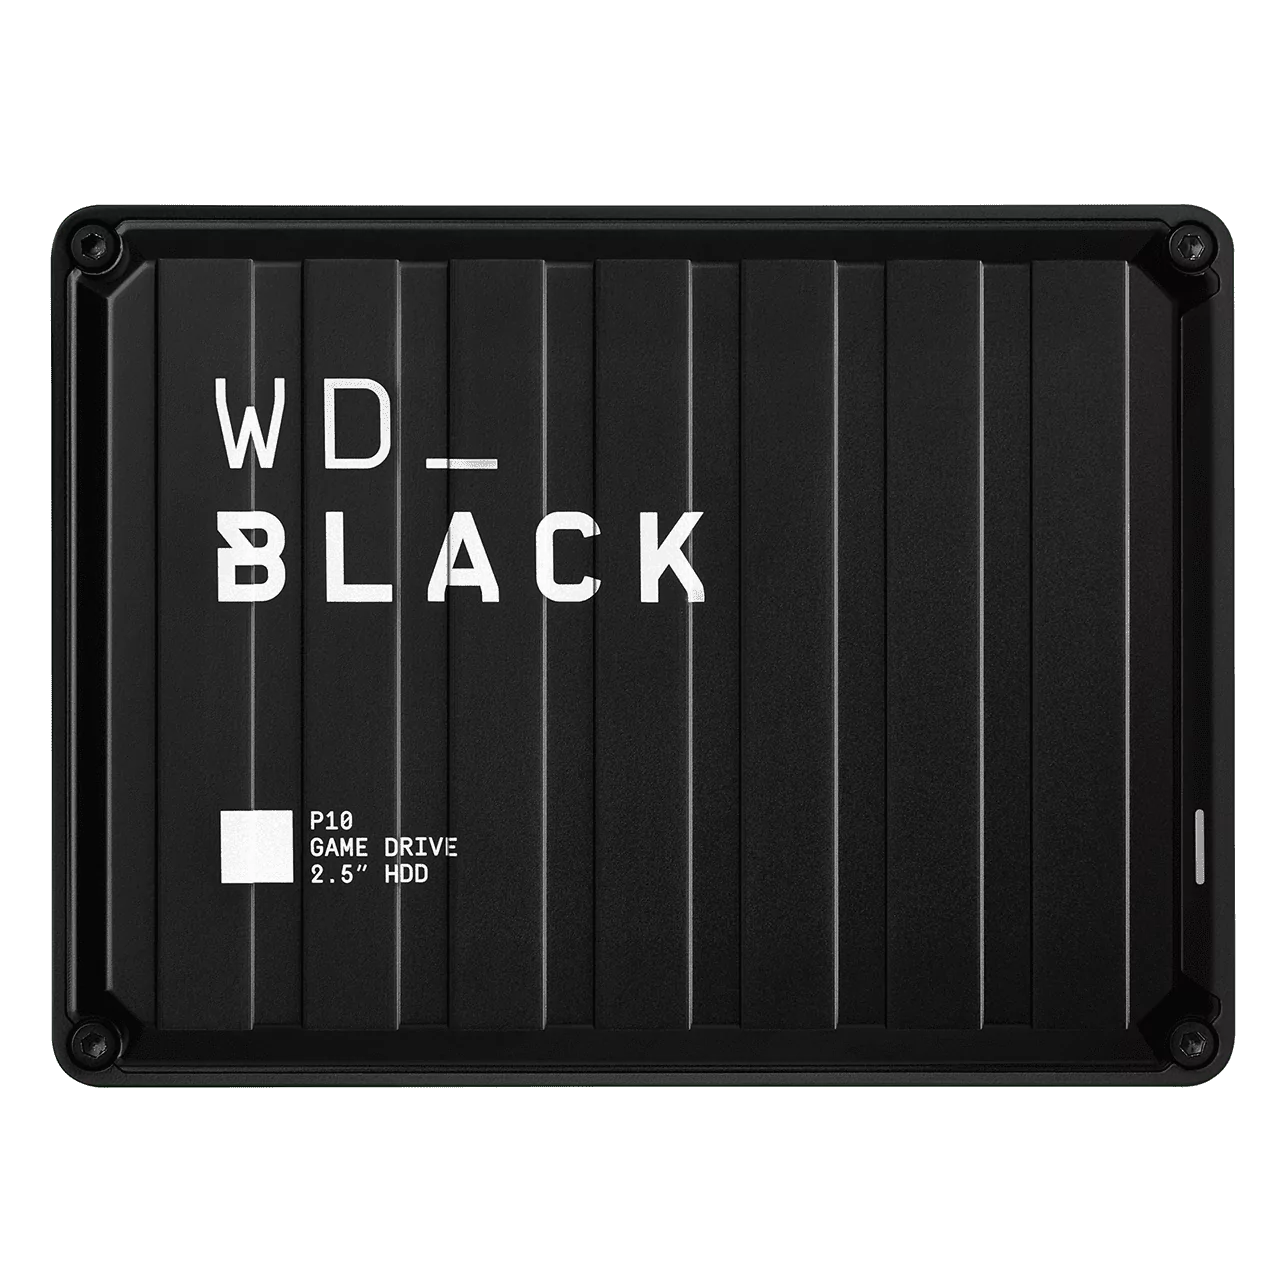 Внешний жесткий диск WD BLACK P10 Game Drive 2 ТБ для игровых косолей и ПК 9